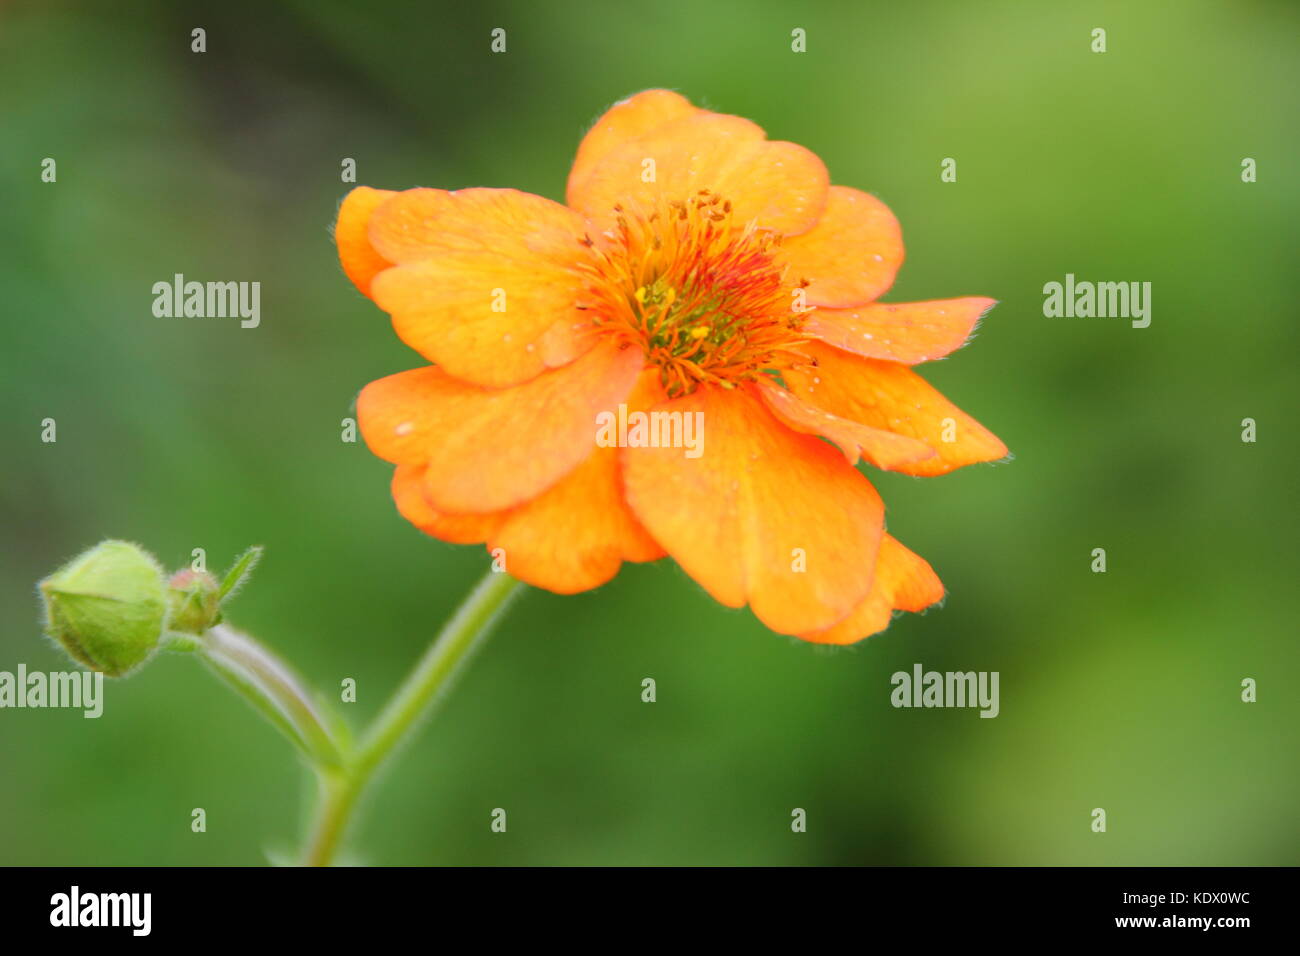 Geum 'Dolly Nord' fioritura in un giardino inglese di frontiera, REGNO UNITO Foto Stock